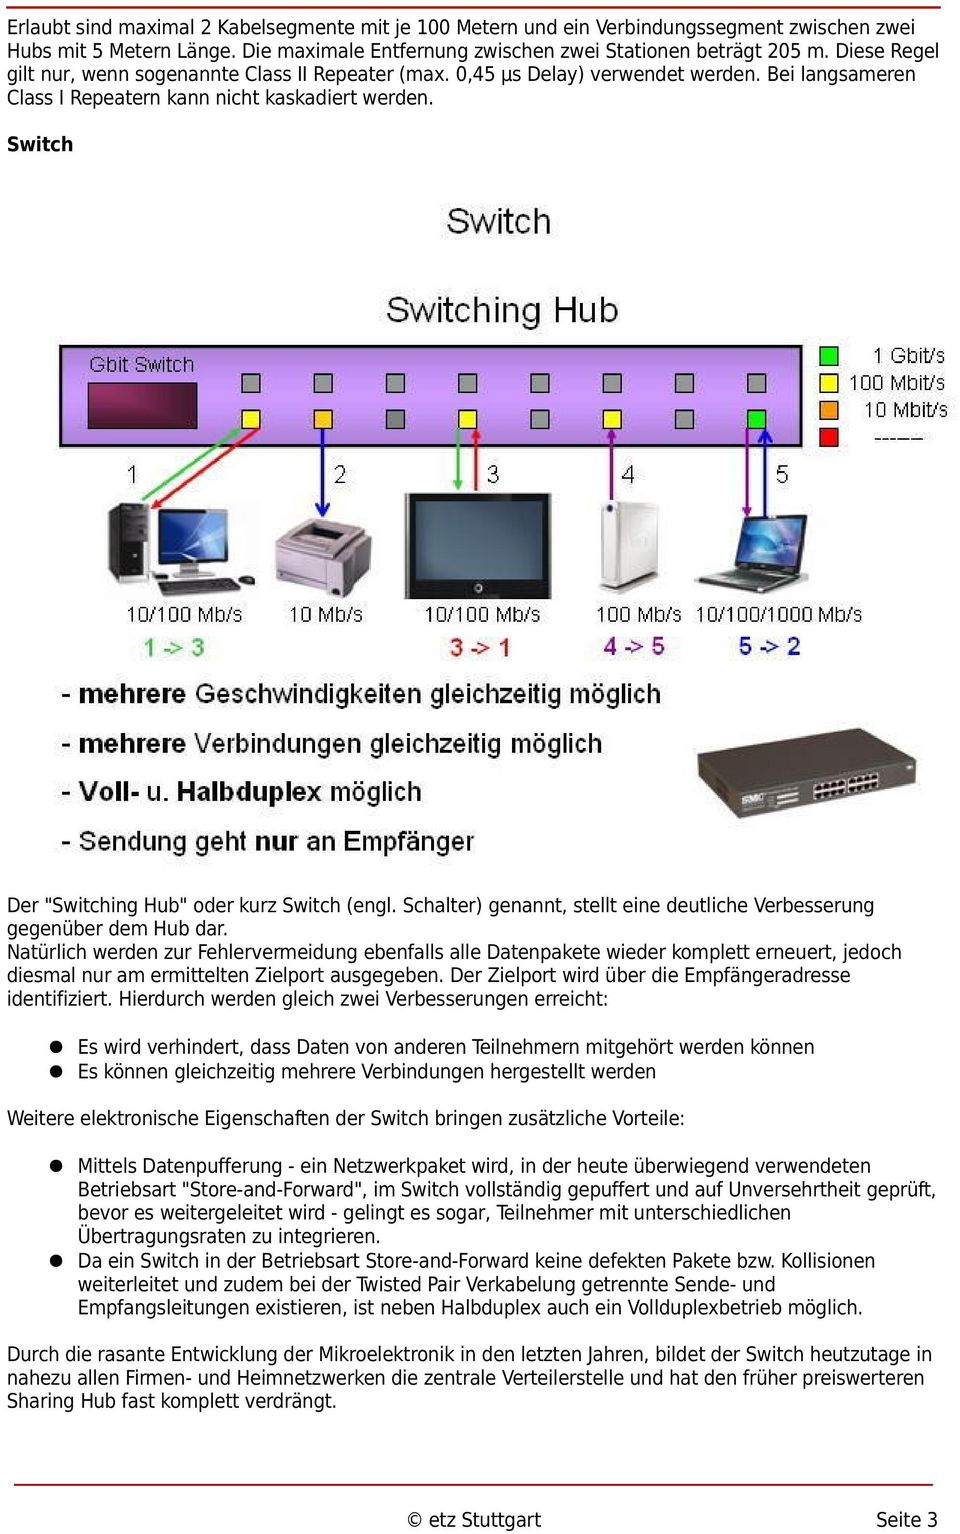 Switch Der "Switching Hub" oder kurz Switch (engl. Schalter) genannt, stellt eine deutliche Verbesserung gegenüber dem Hub dar.